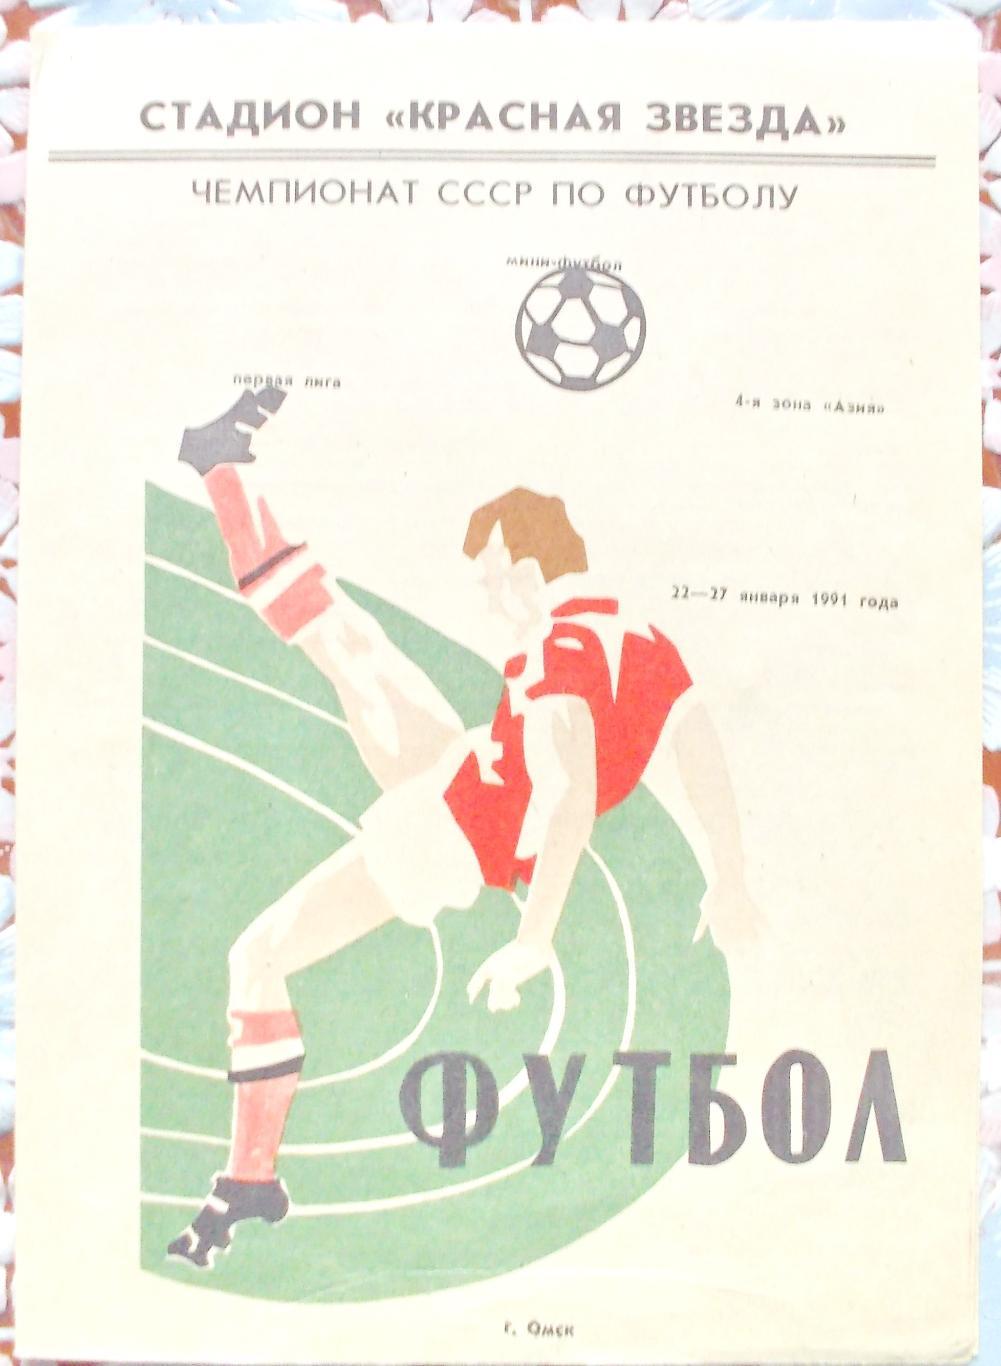 Первая лига, 6-я зона Азия. Омск, 21 - 27 января 1991 год